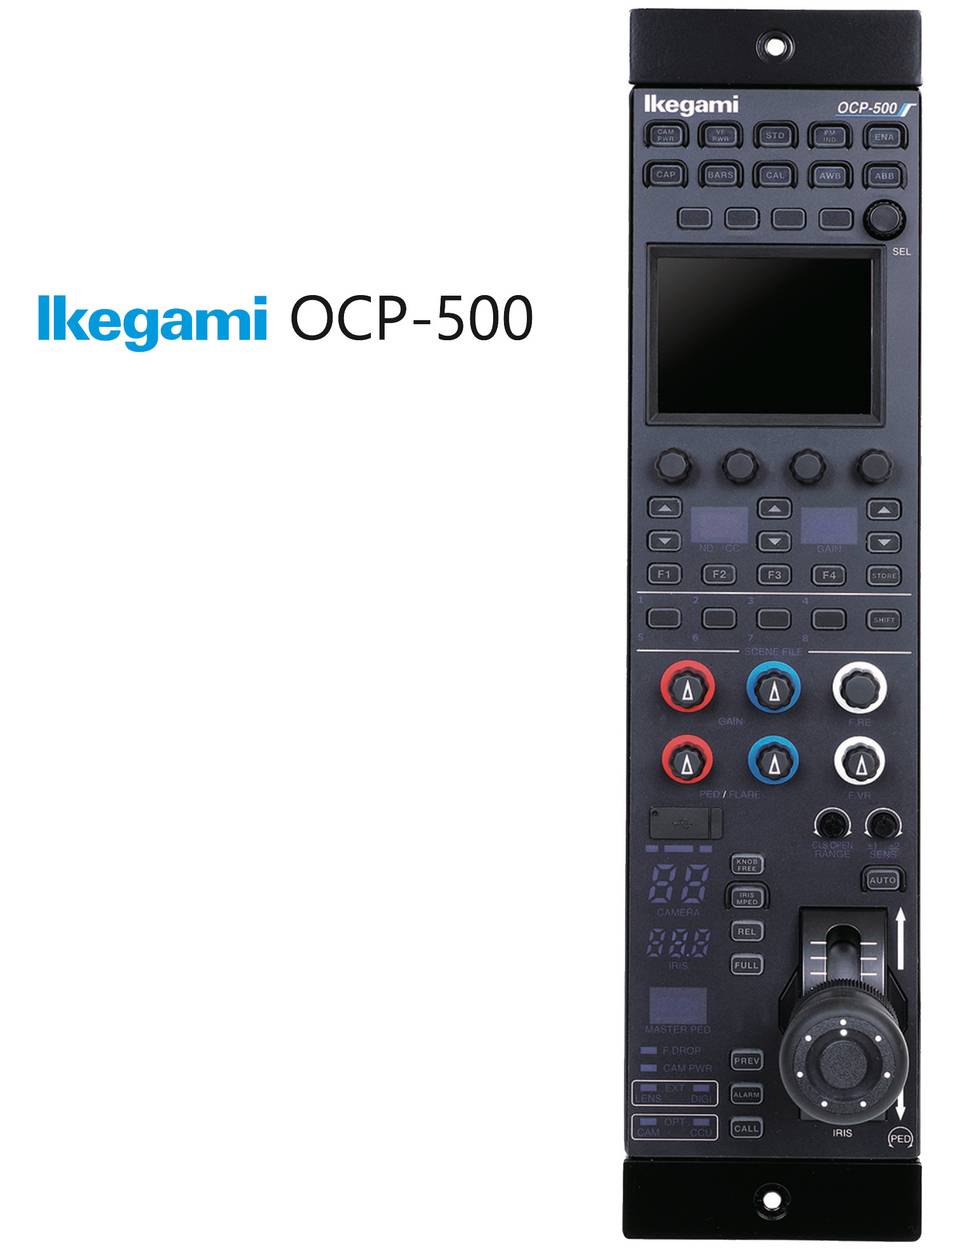 Ikegami's New HDK-X500 Camera & Accessories